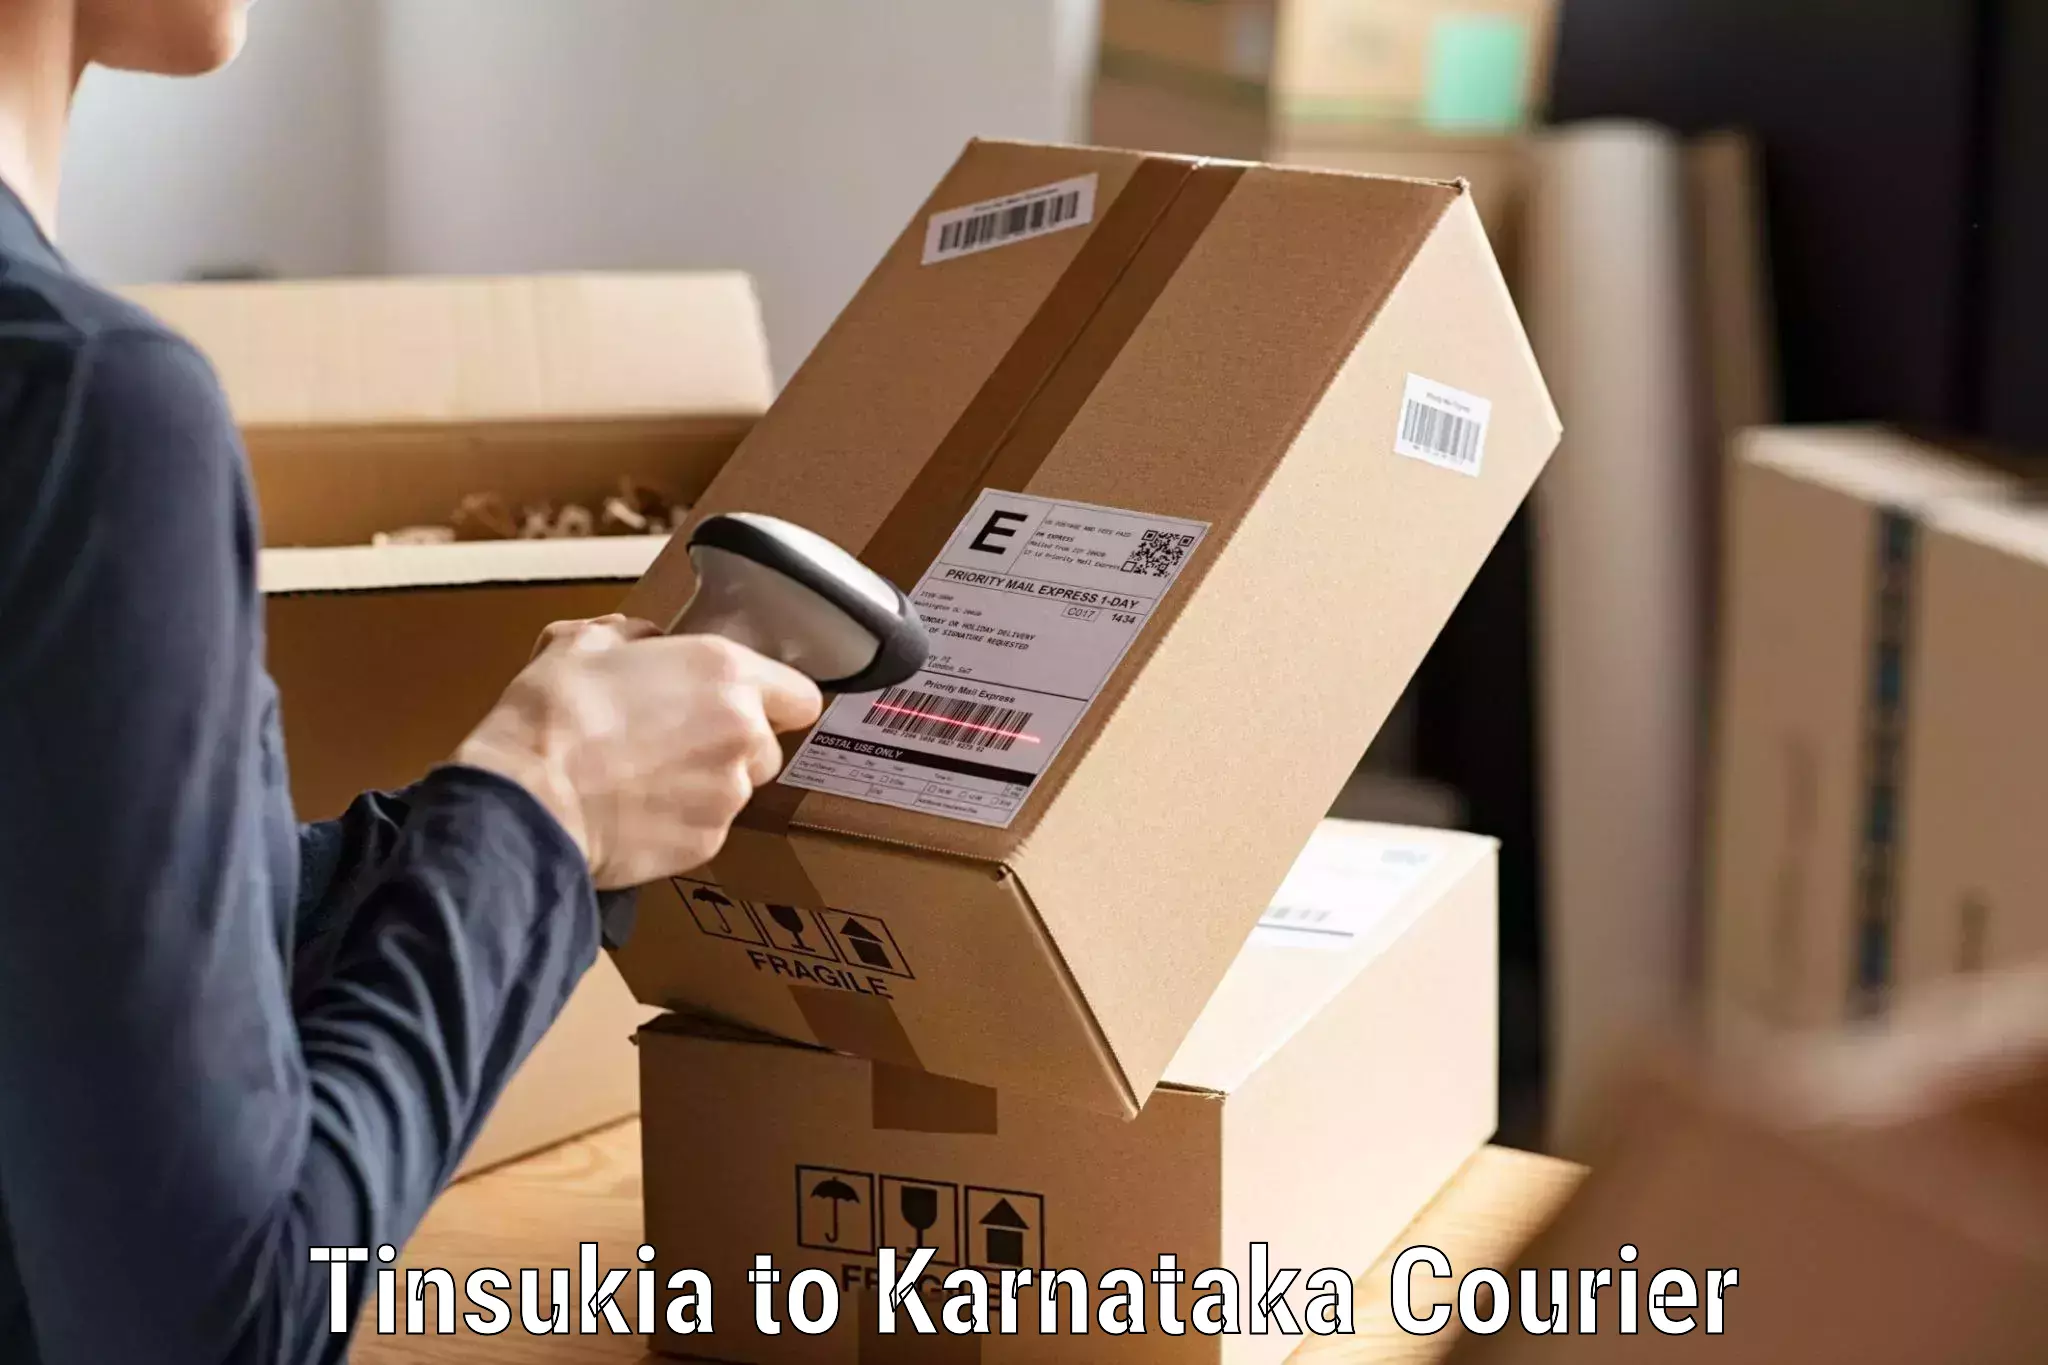 Premium courier services Tinsukia to Mysore